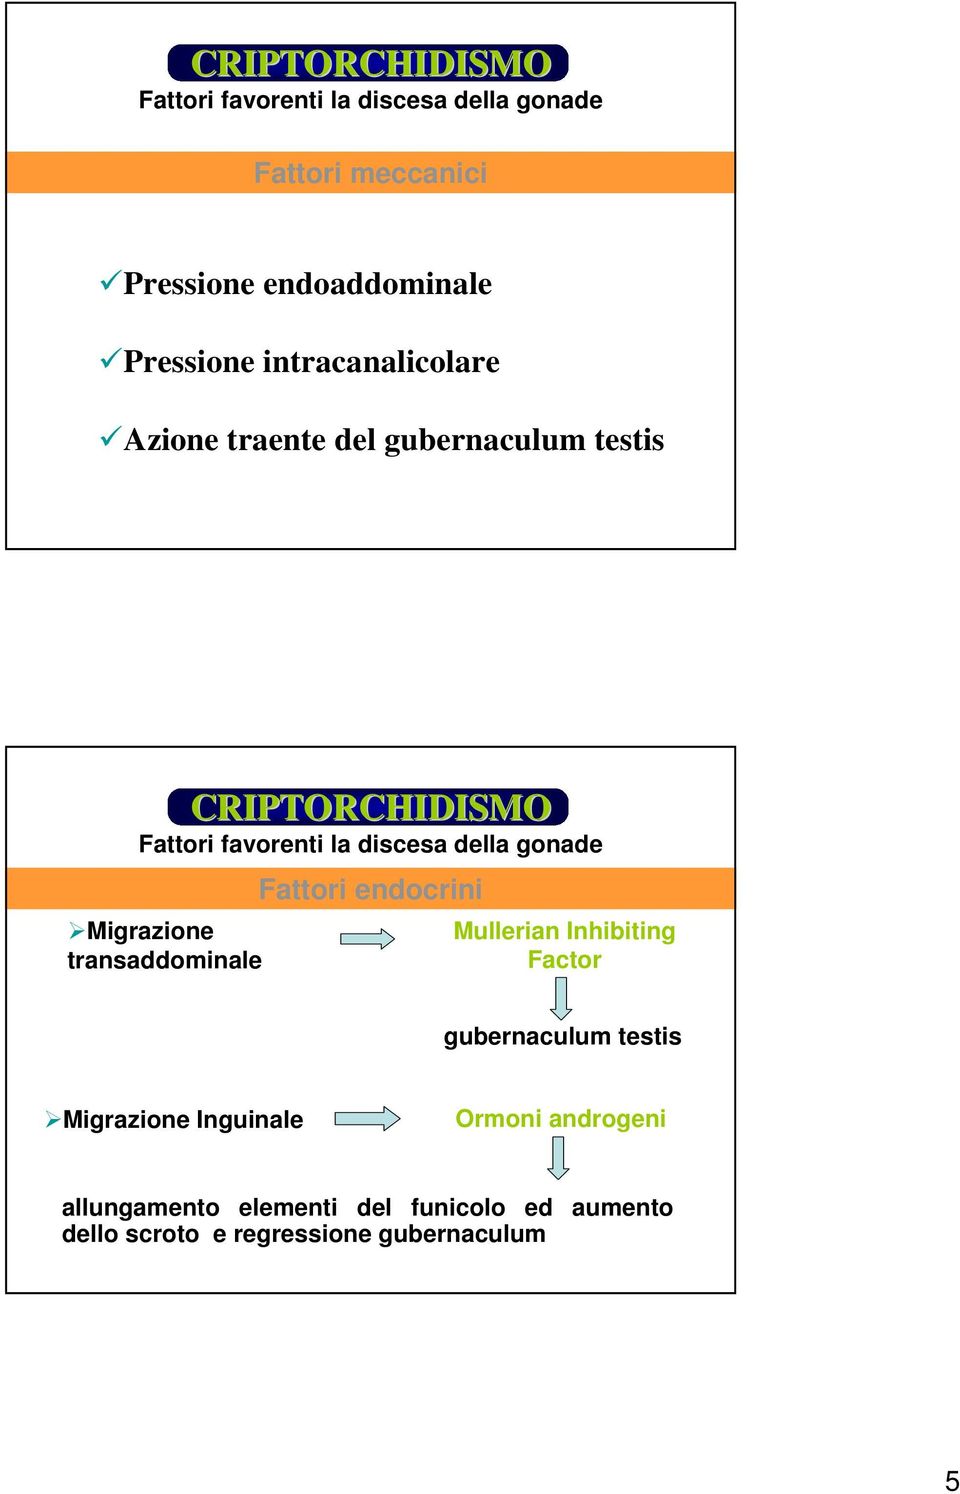 Migrazione transaddominale Fattori endocrini Mullerian Inhibiting Factor gubernaculum testis